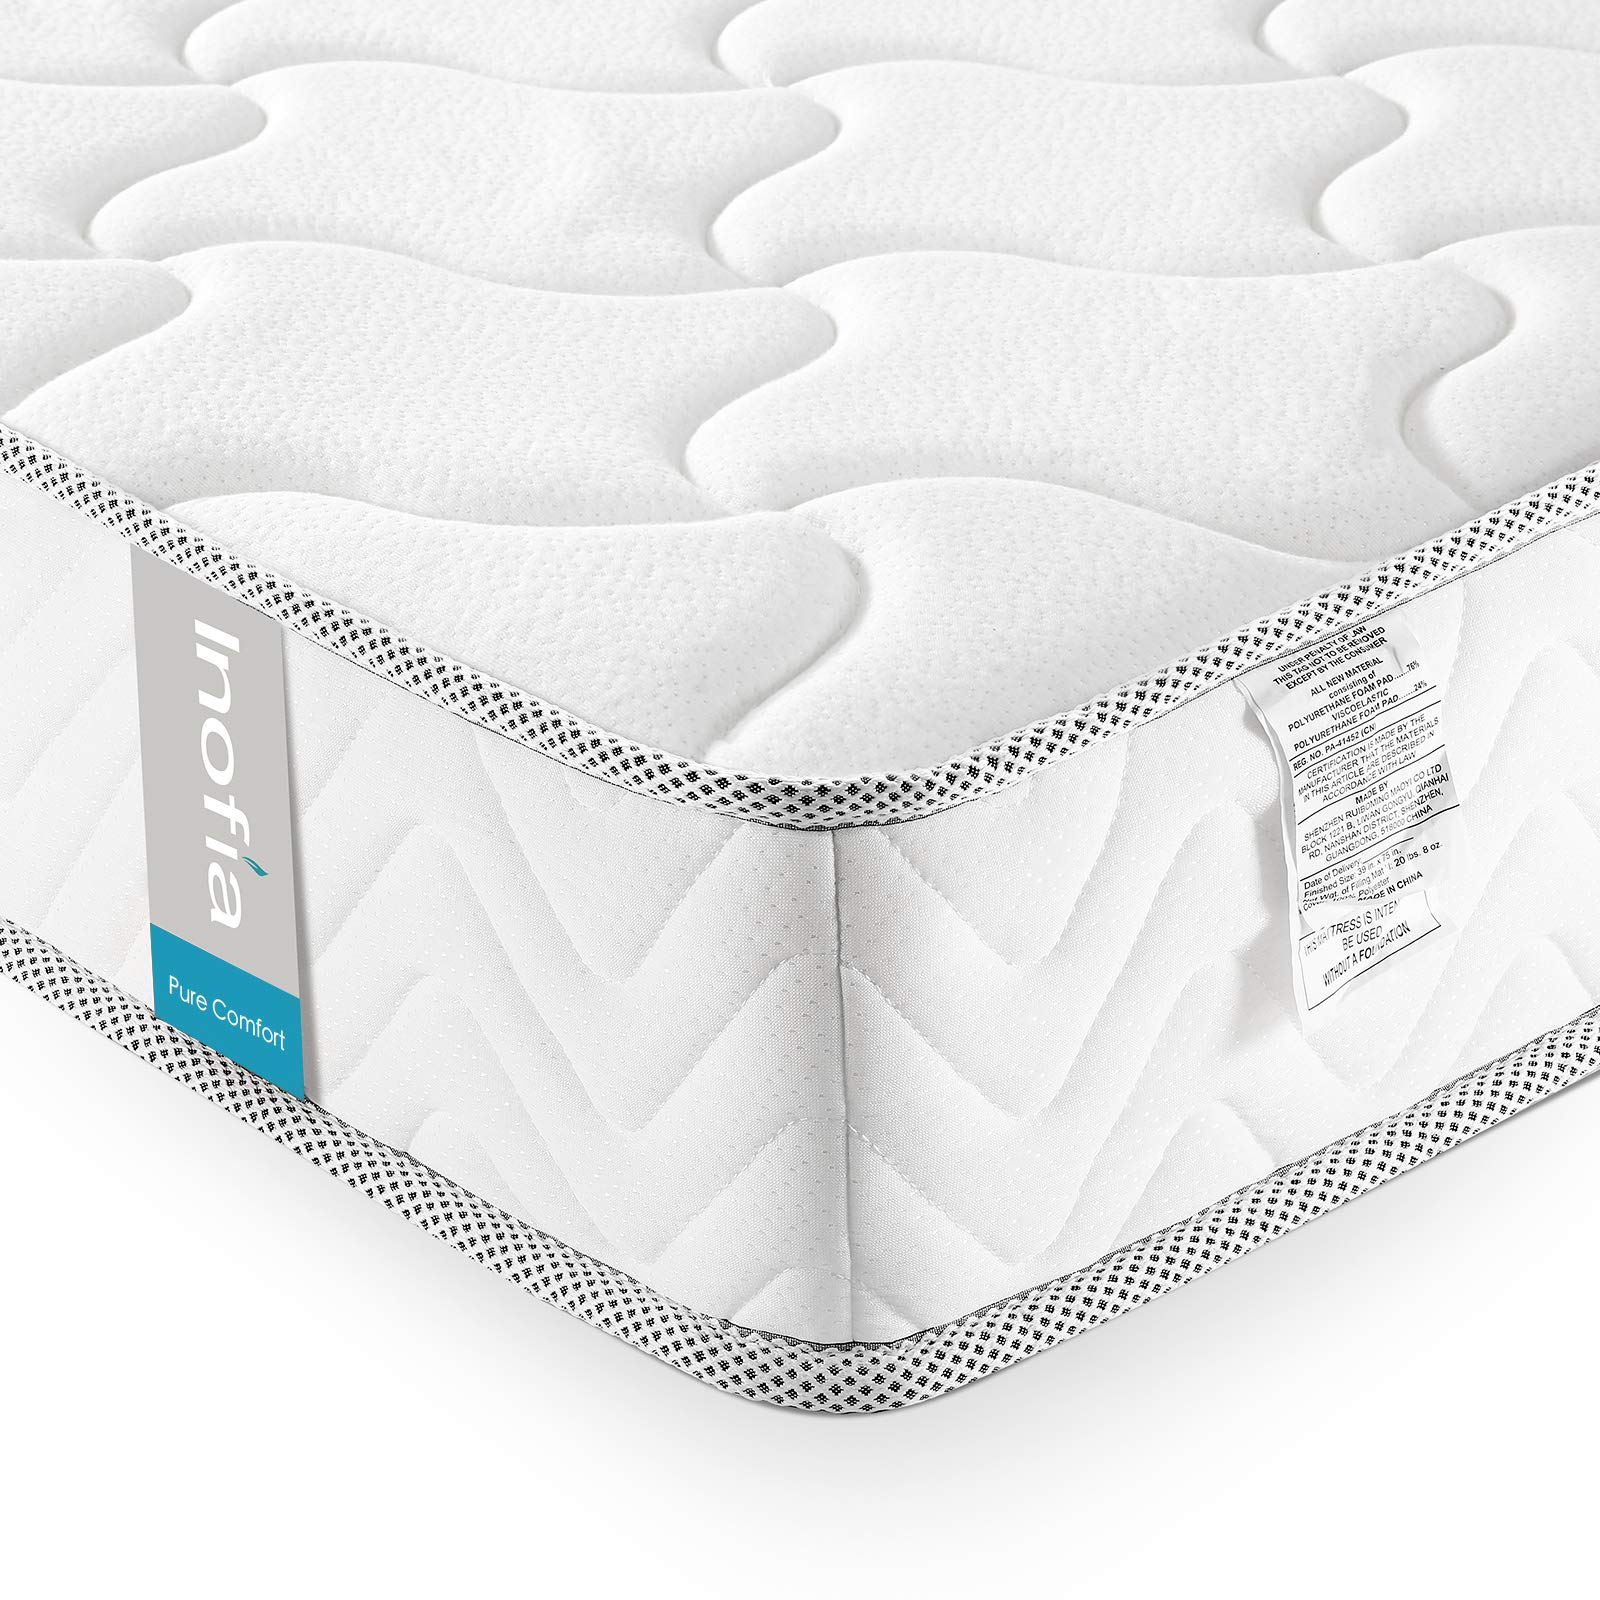 Inofia 6 Inch Queen Size Mattress, Cool Memory Foam Bed Mattress in a Box, Medium Firm Queen Bed Mattresses